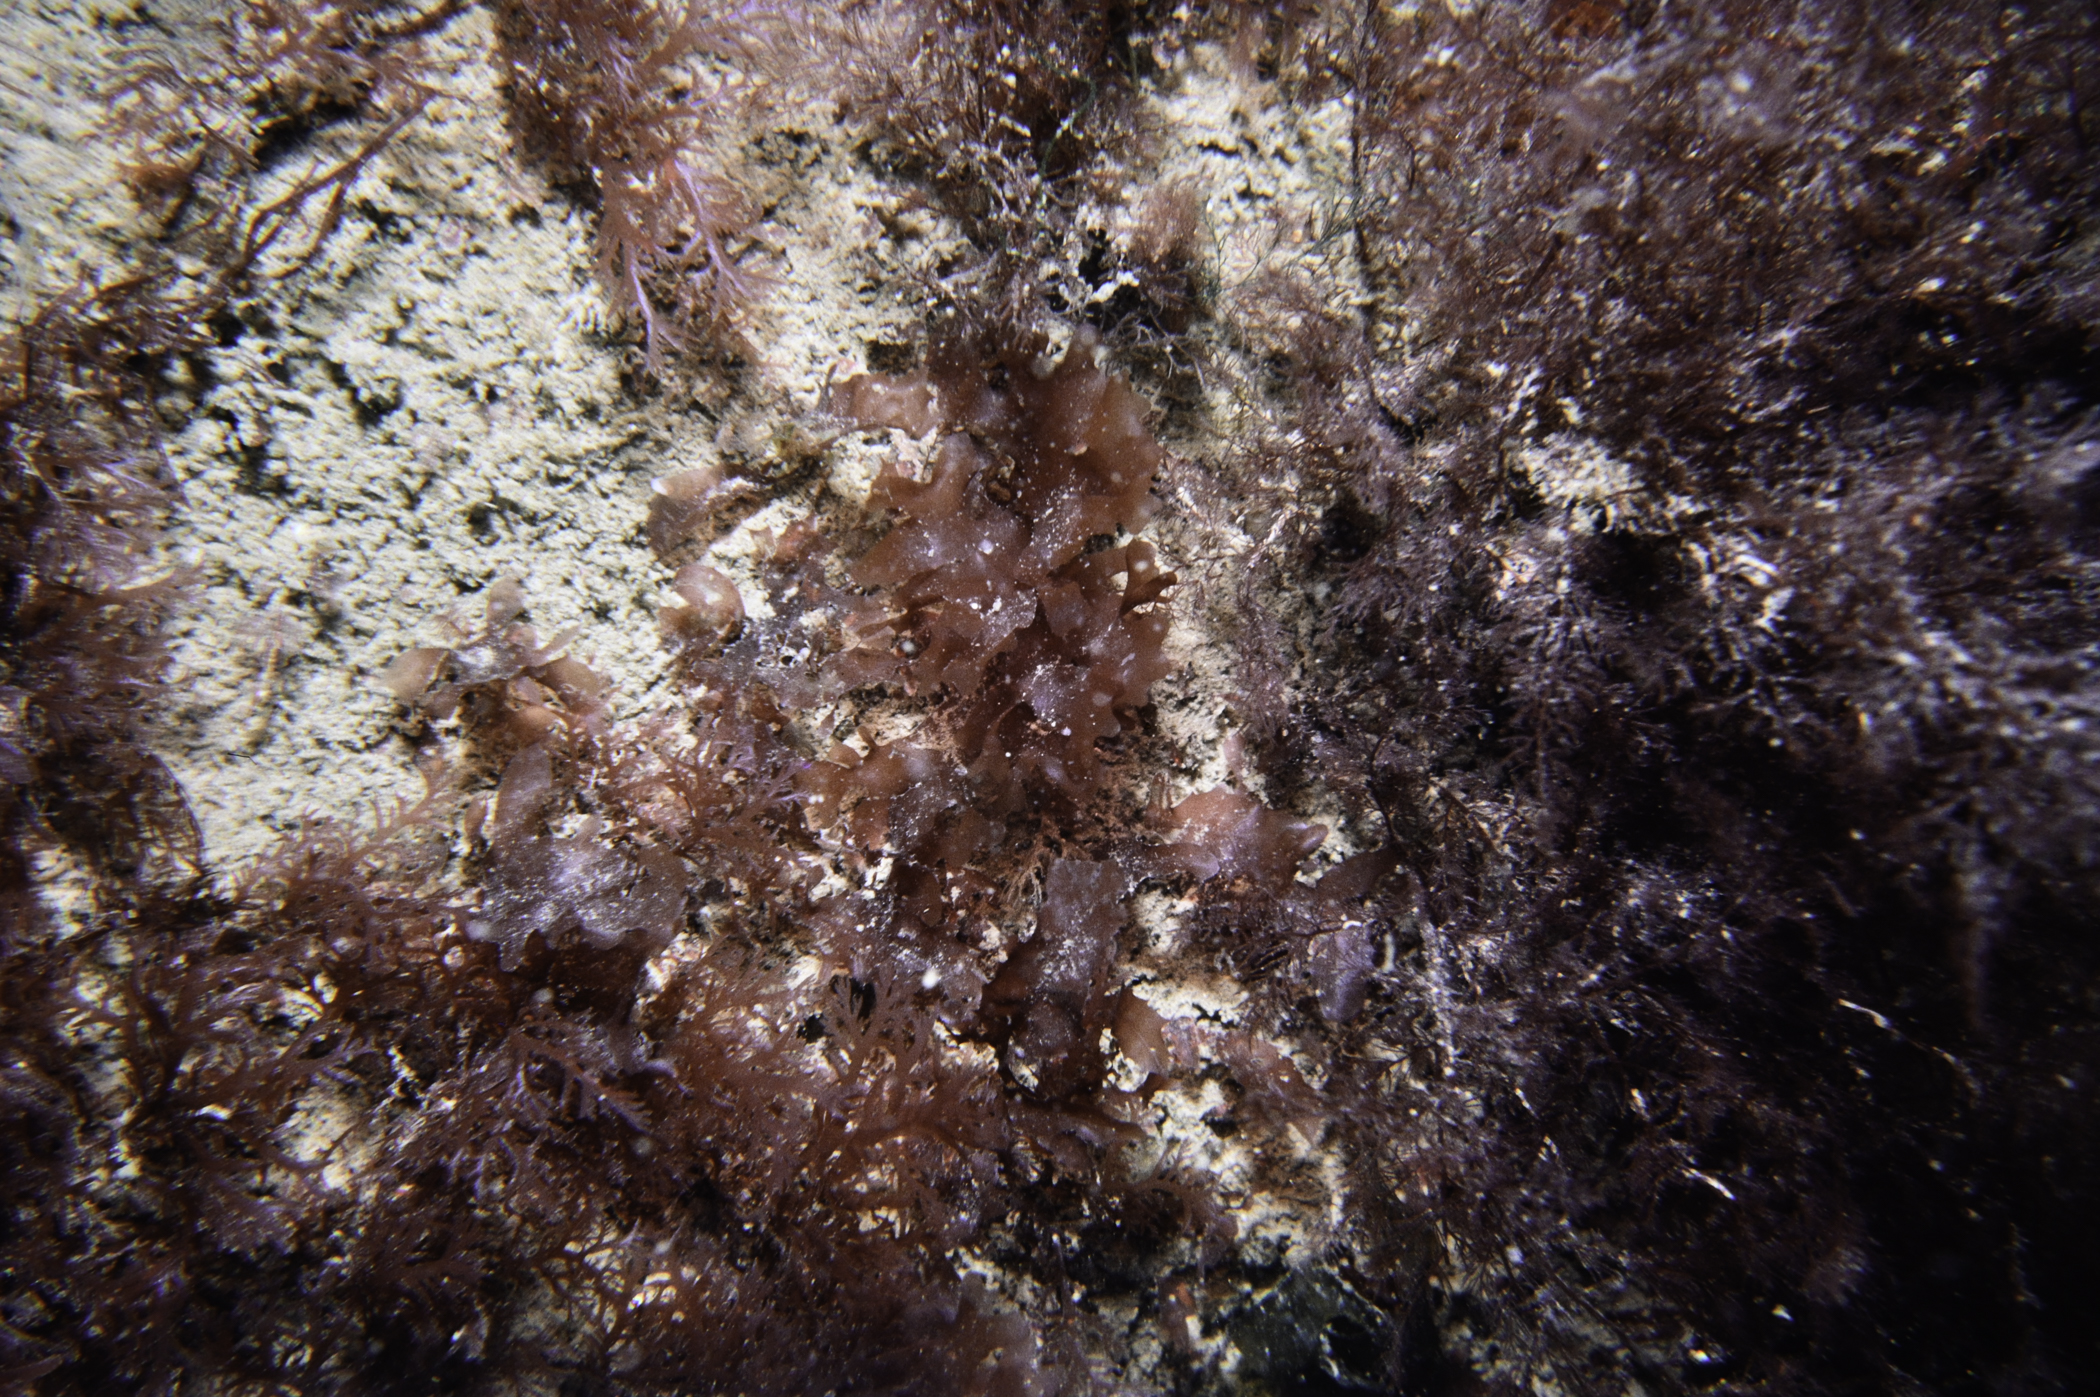 Plocamium cartilagineum, Cryptopleura ramosa. Site: NE Mew Island, Copeland Islands. 